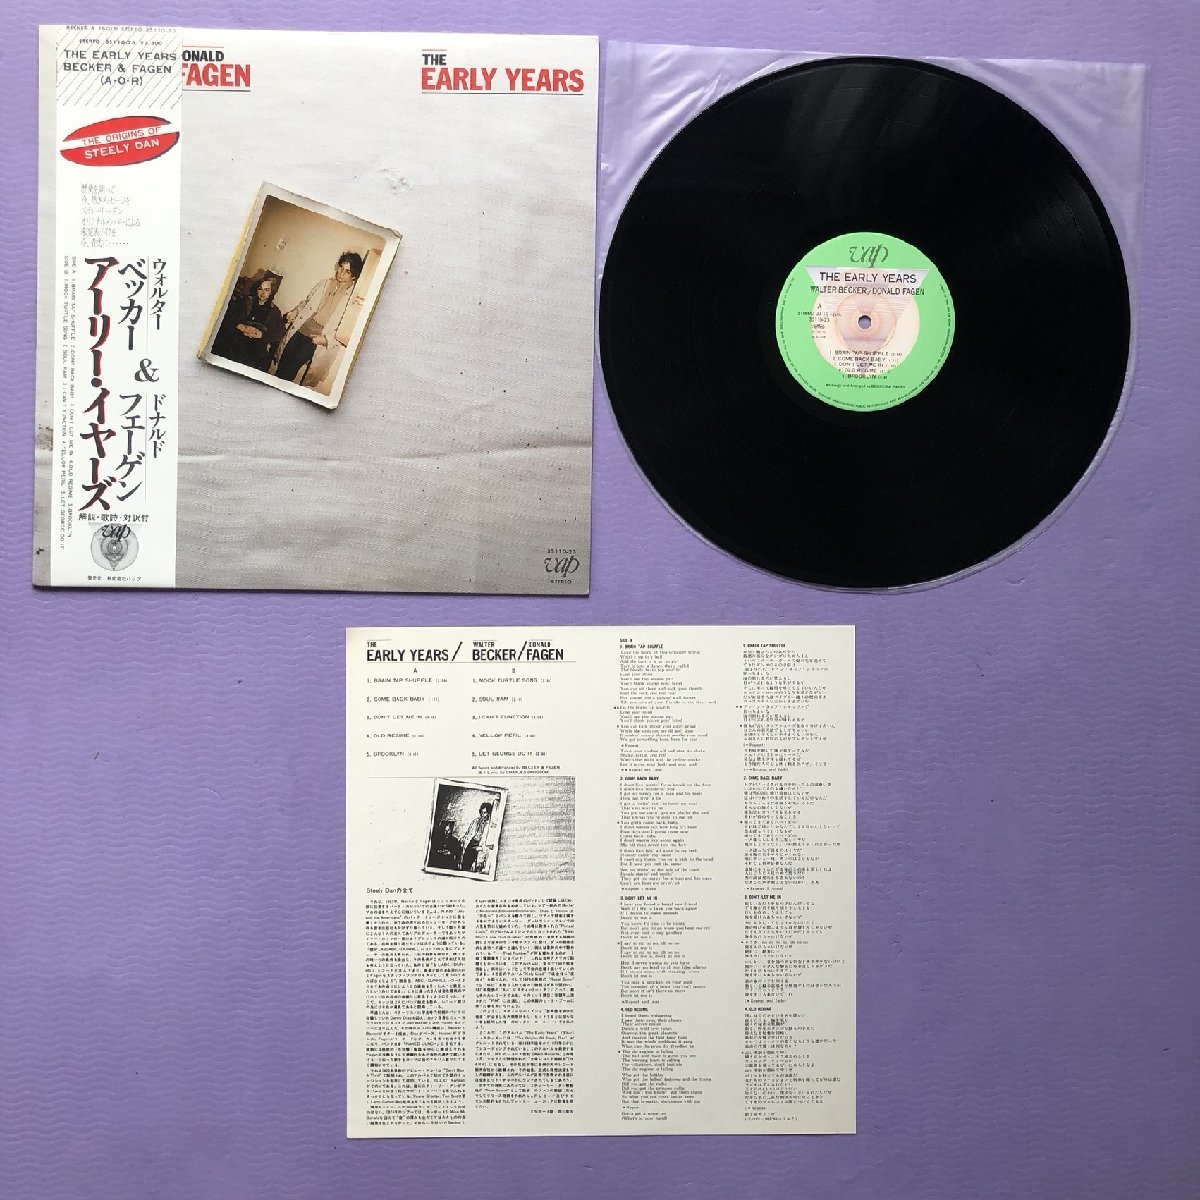 傷なし美盤 美ジャケ 超貴重盤 Walter Becker & Donald Fagen (Steely Dan) 1983年 LPレコード The Early Years 国内盤 帯付_画像5